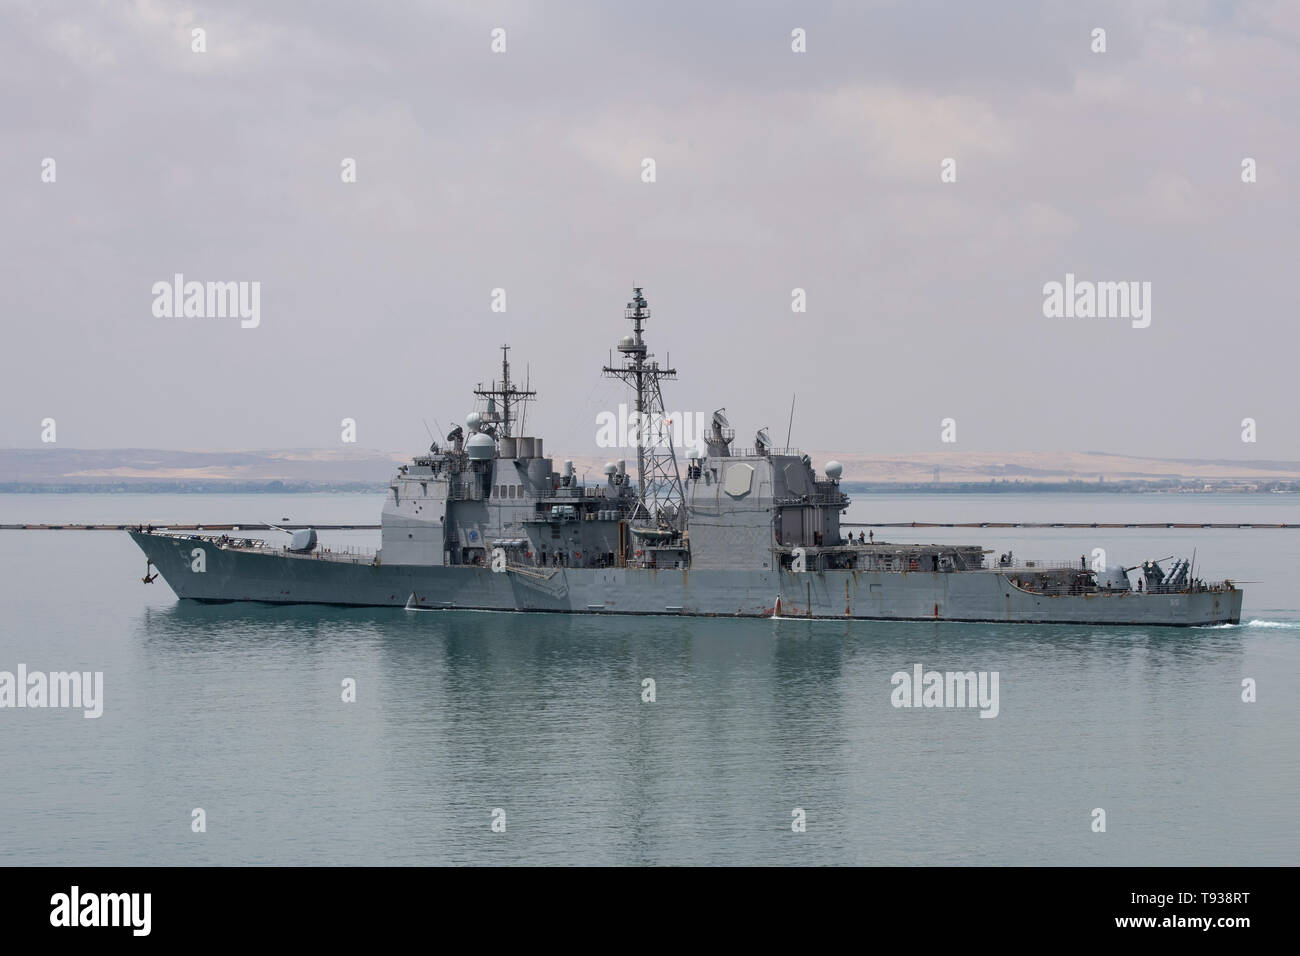 L'Egitto, il canale di Suez. Noi navi militari in transito attraverso il canale di Suez il 9 maggio 2019. Ticonderoga-class guidato-missili cruiser USS Leyte golfo (CG 55). Foto Stock